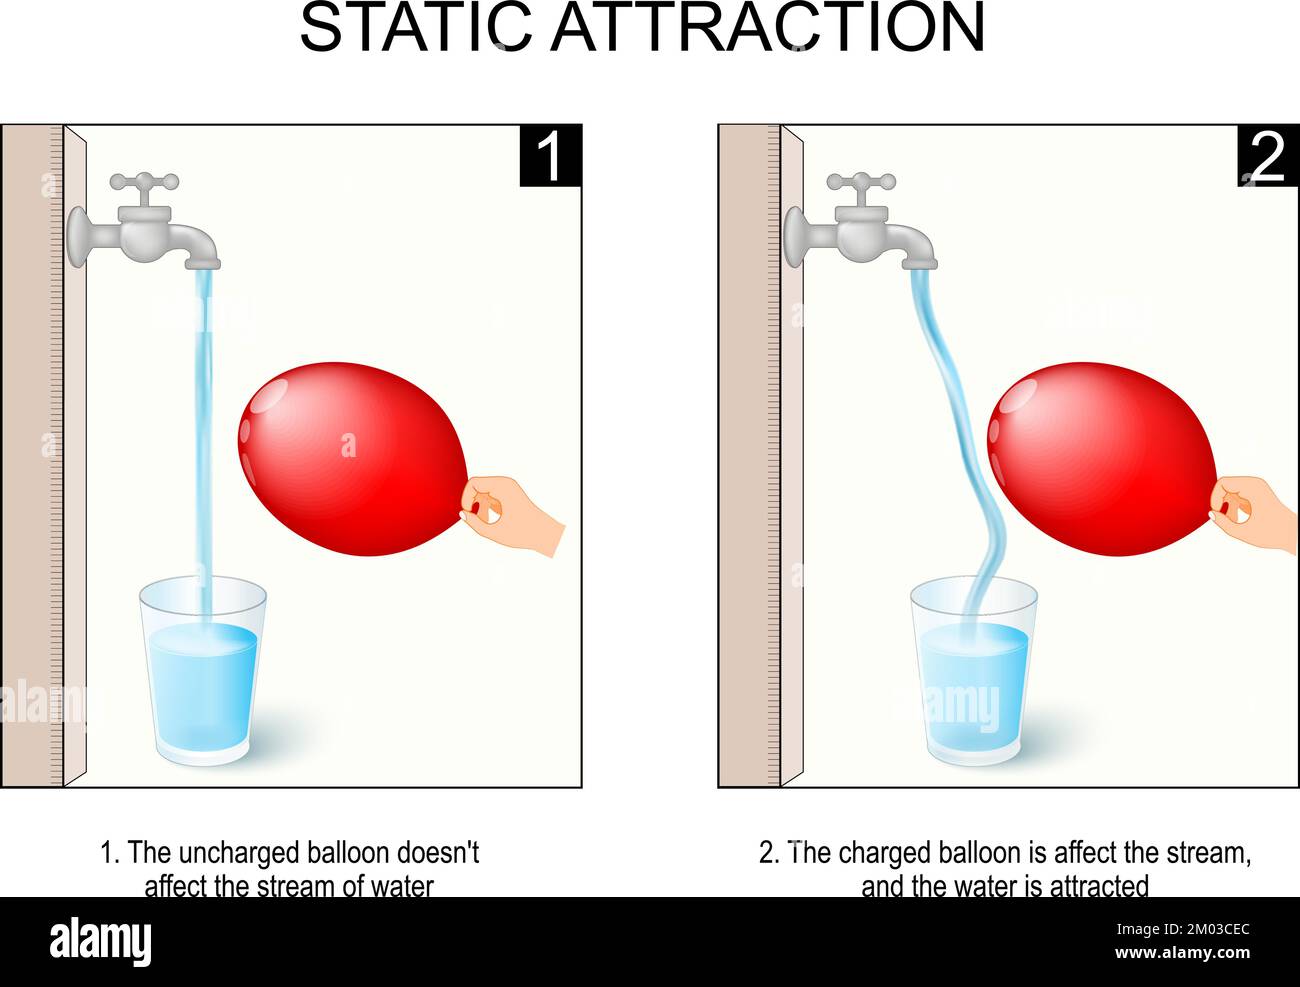 Statische Anziehung. Wissenschaftliches Experiment mit Wasser, Ballon und Hahn. Der nicht geladene Ballon hat keinen Einfluss auf den Wasserstrom. Der geladene Ballon Stock Vektor